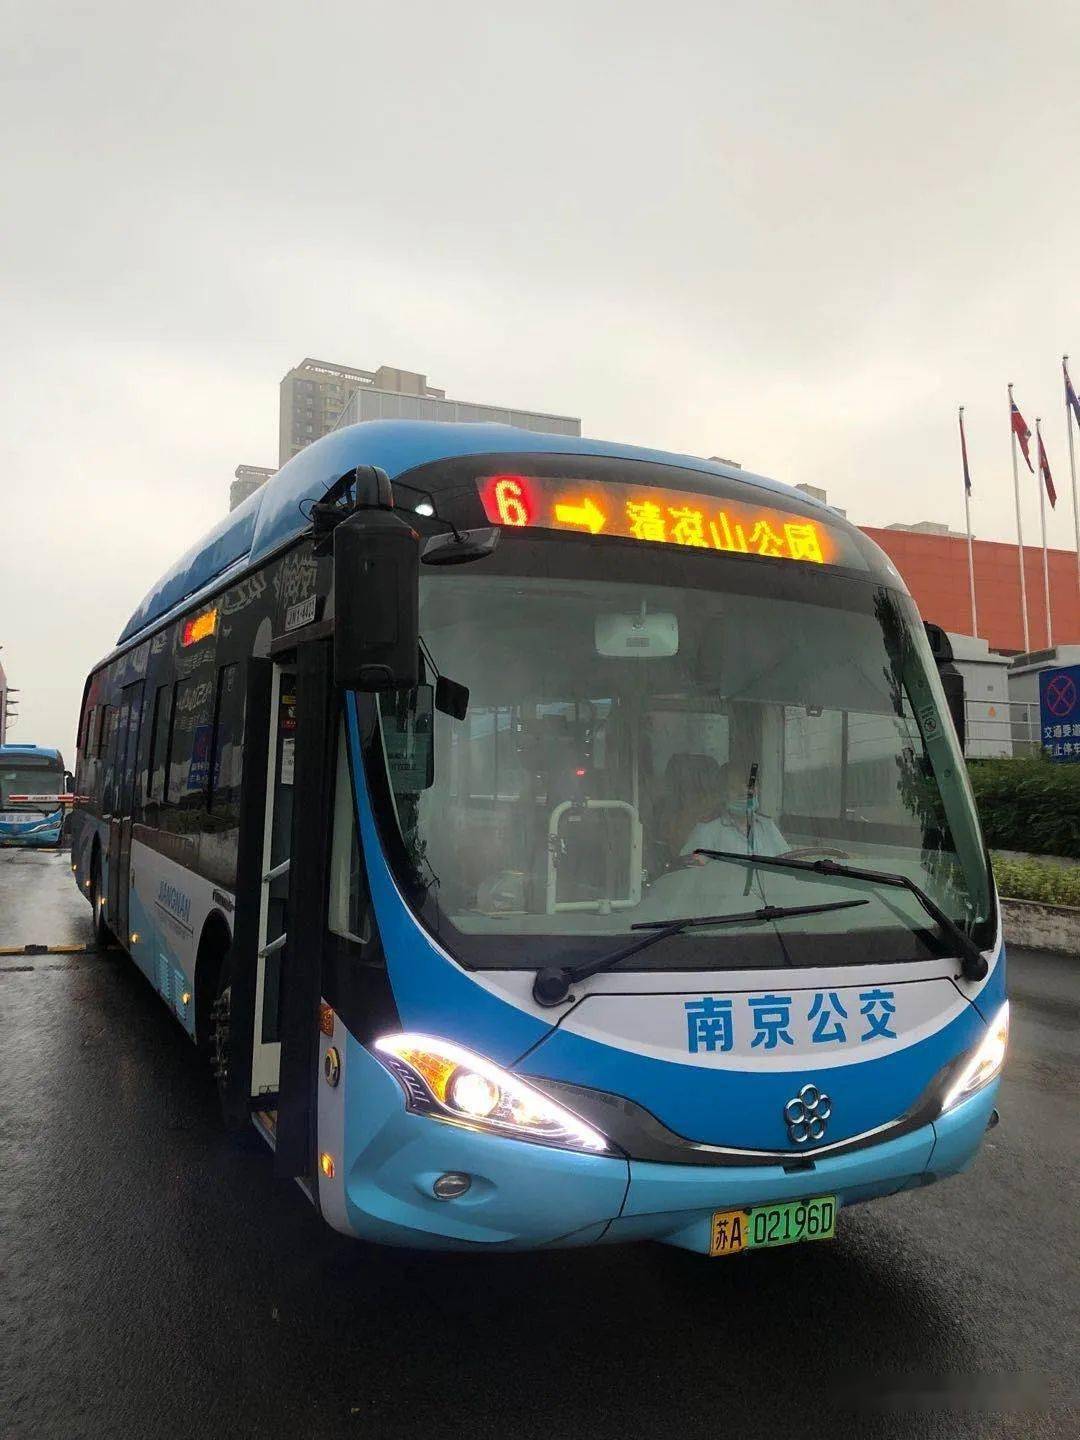 暴雨袭城,南京公交积极行动 "雨"乘客一路同行